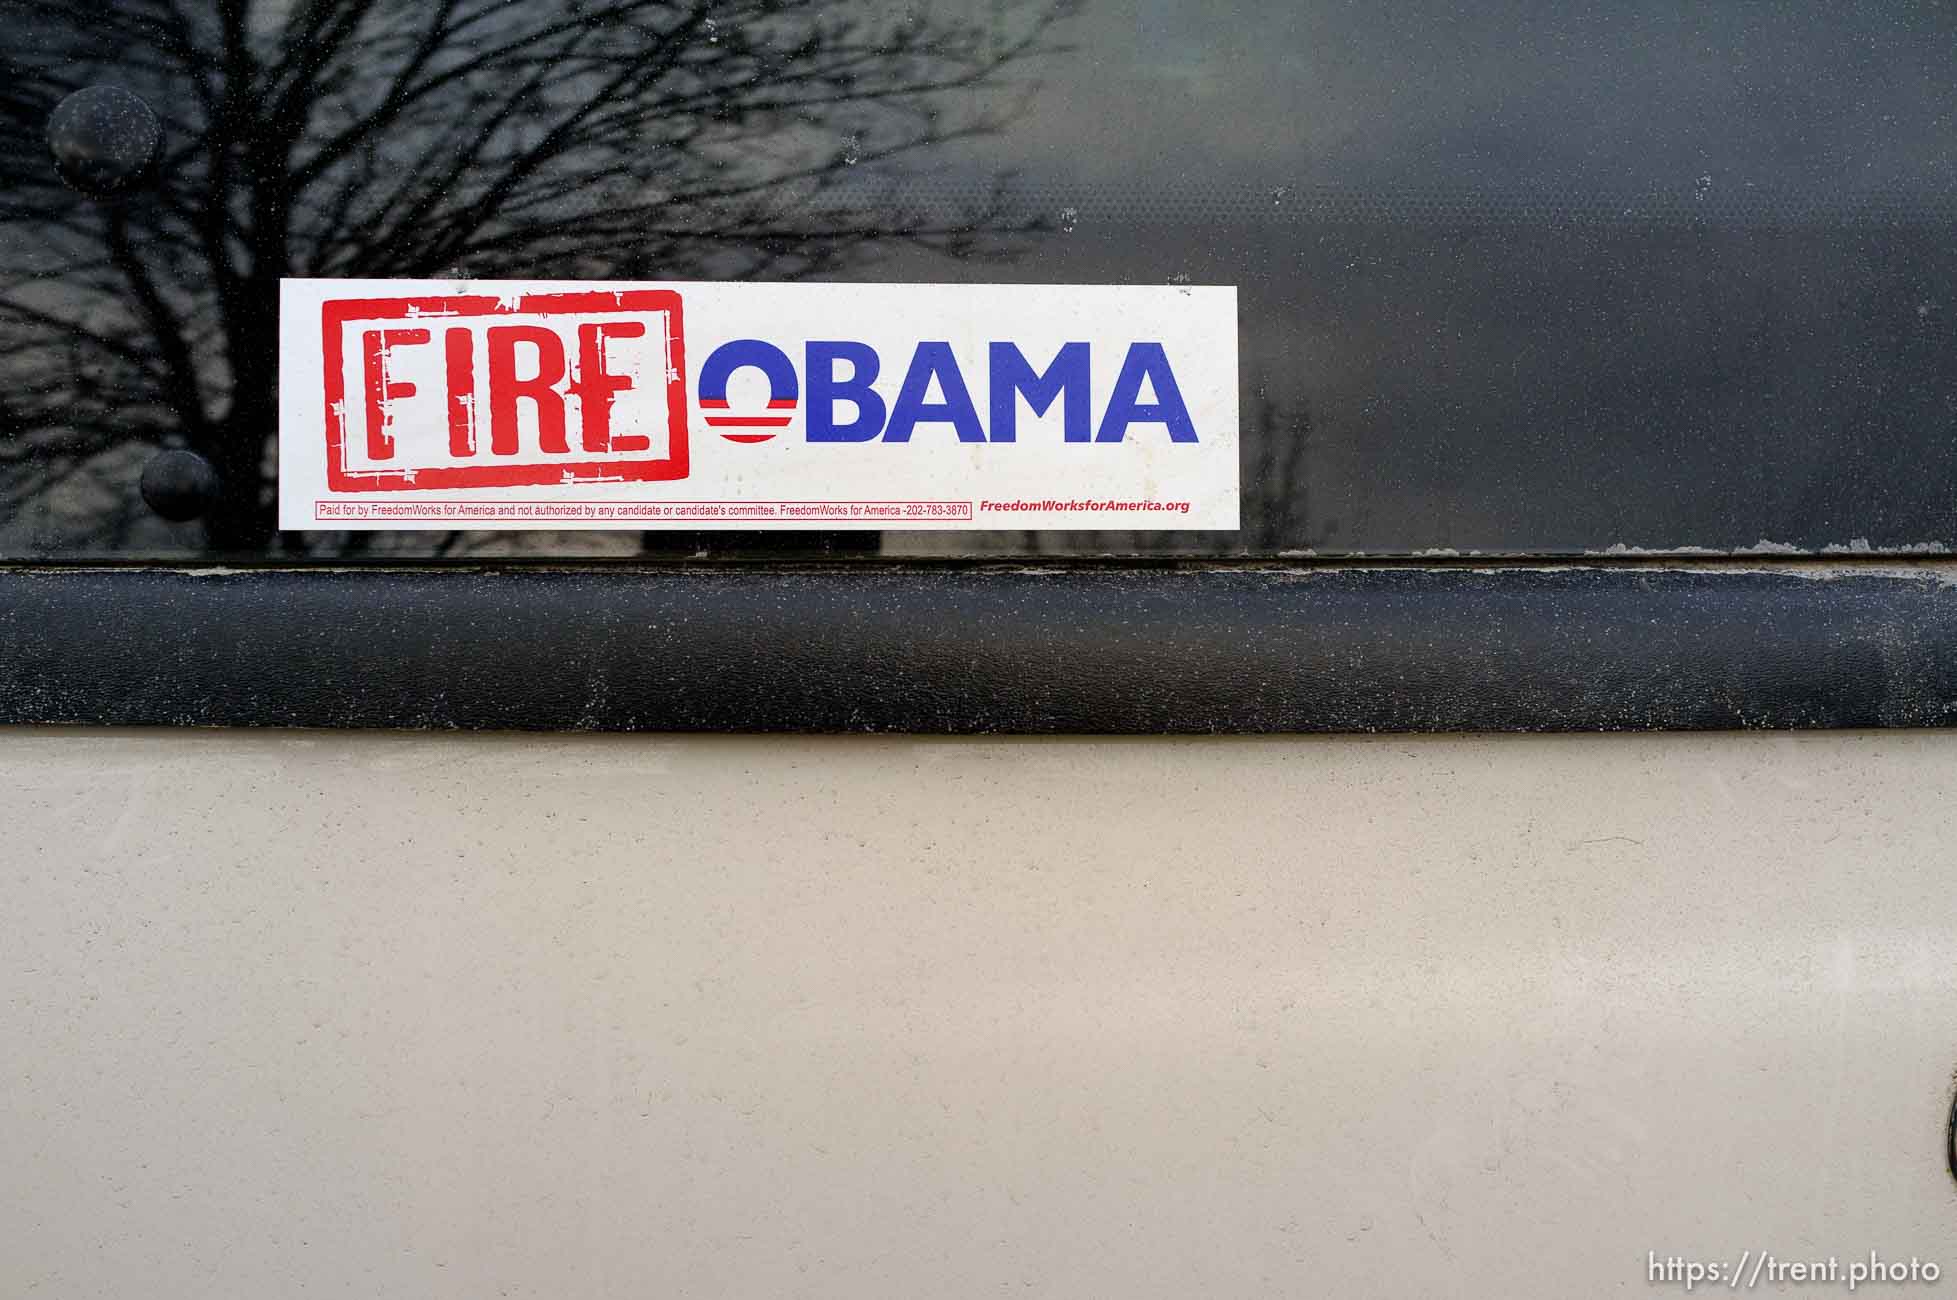 Fire Obama